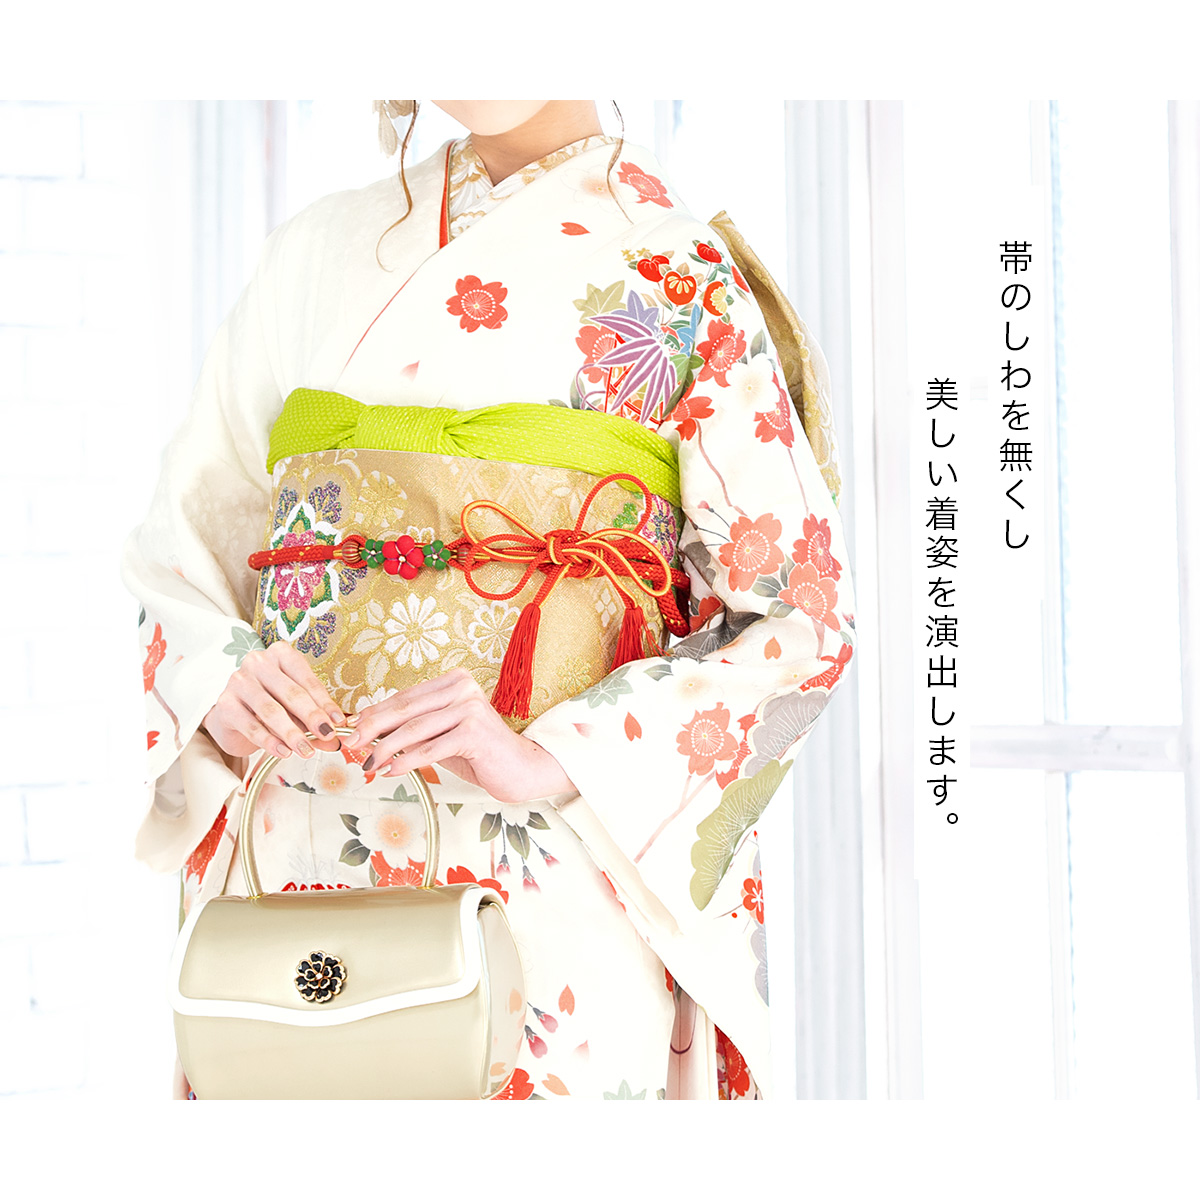 メーカー直売着付け小物 帯板 前板 和装小物 通年 菊 日本製 ポケット付き レディース ピンク ベルト付き 女性 あす楽対応商品 和服 